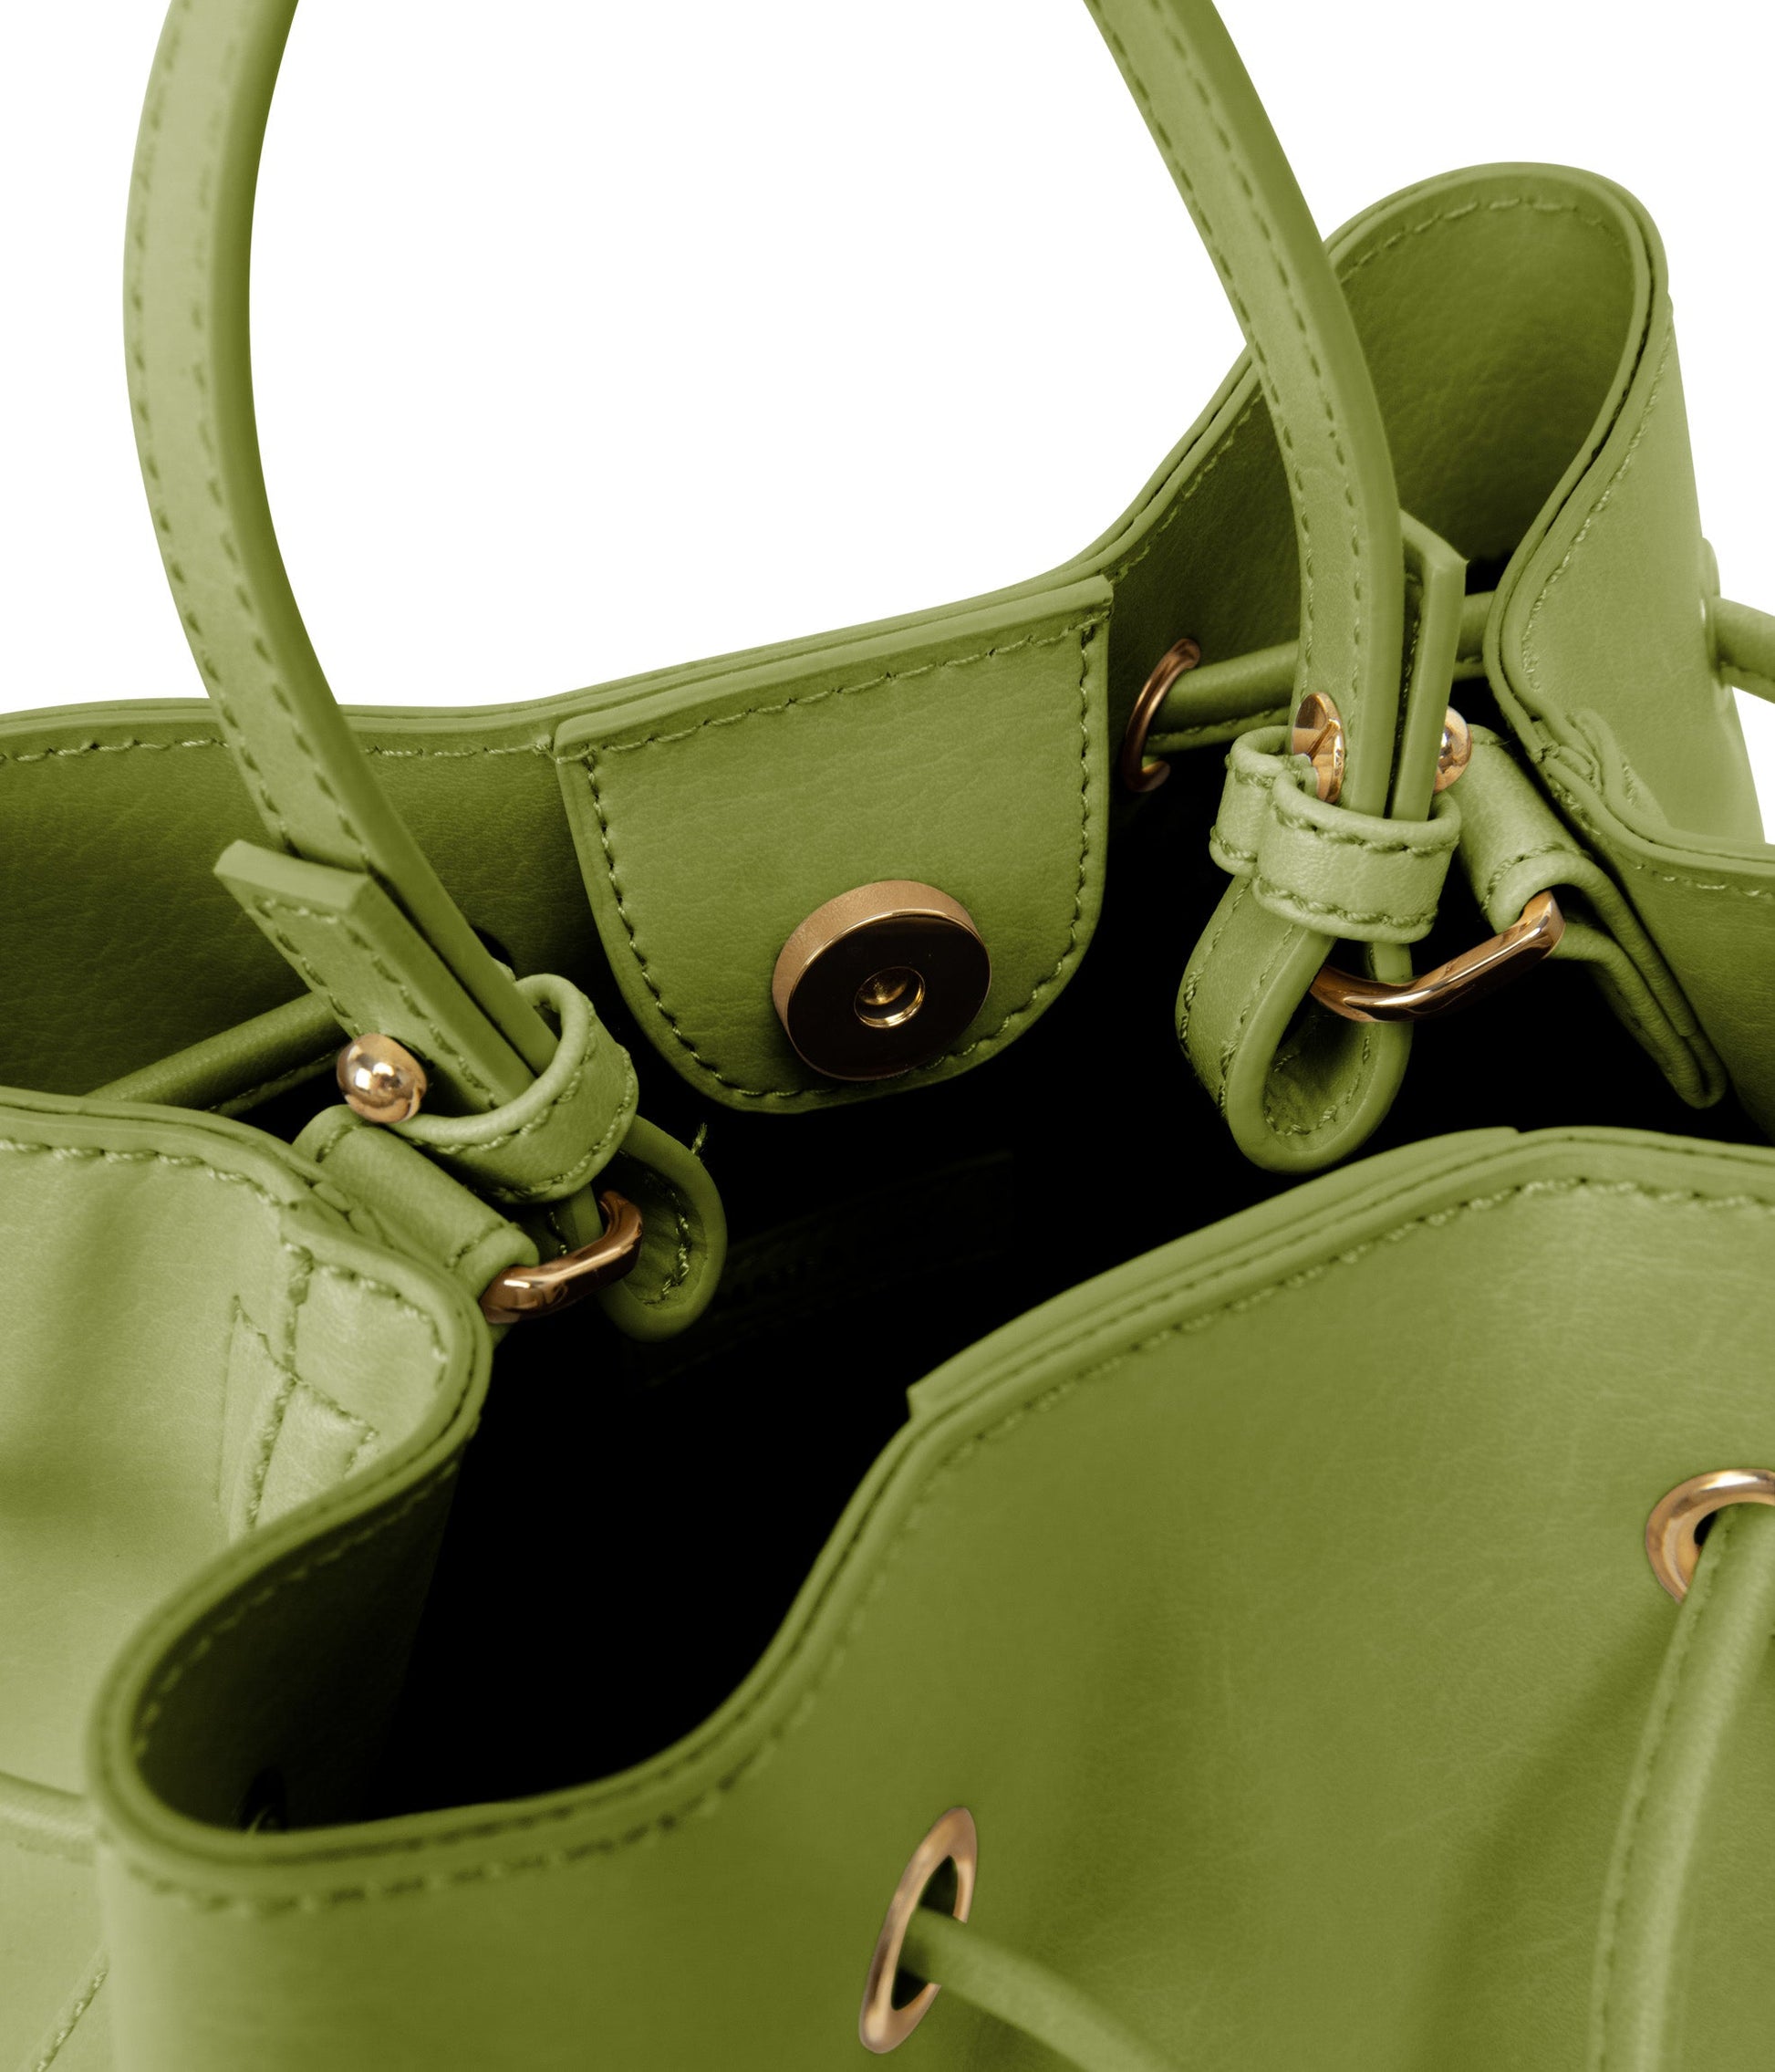 DUPONT Vegan Bucket Bag - Vintage | Color: Green - variant::frog